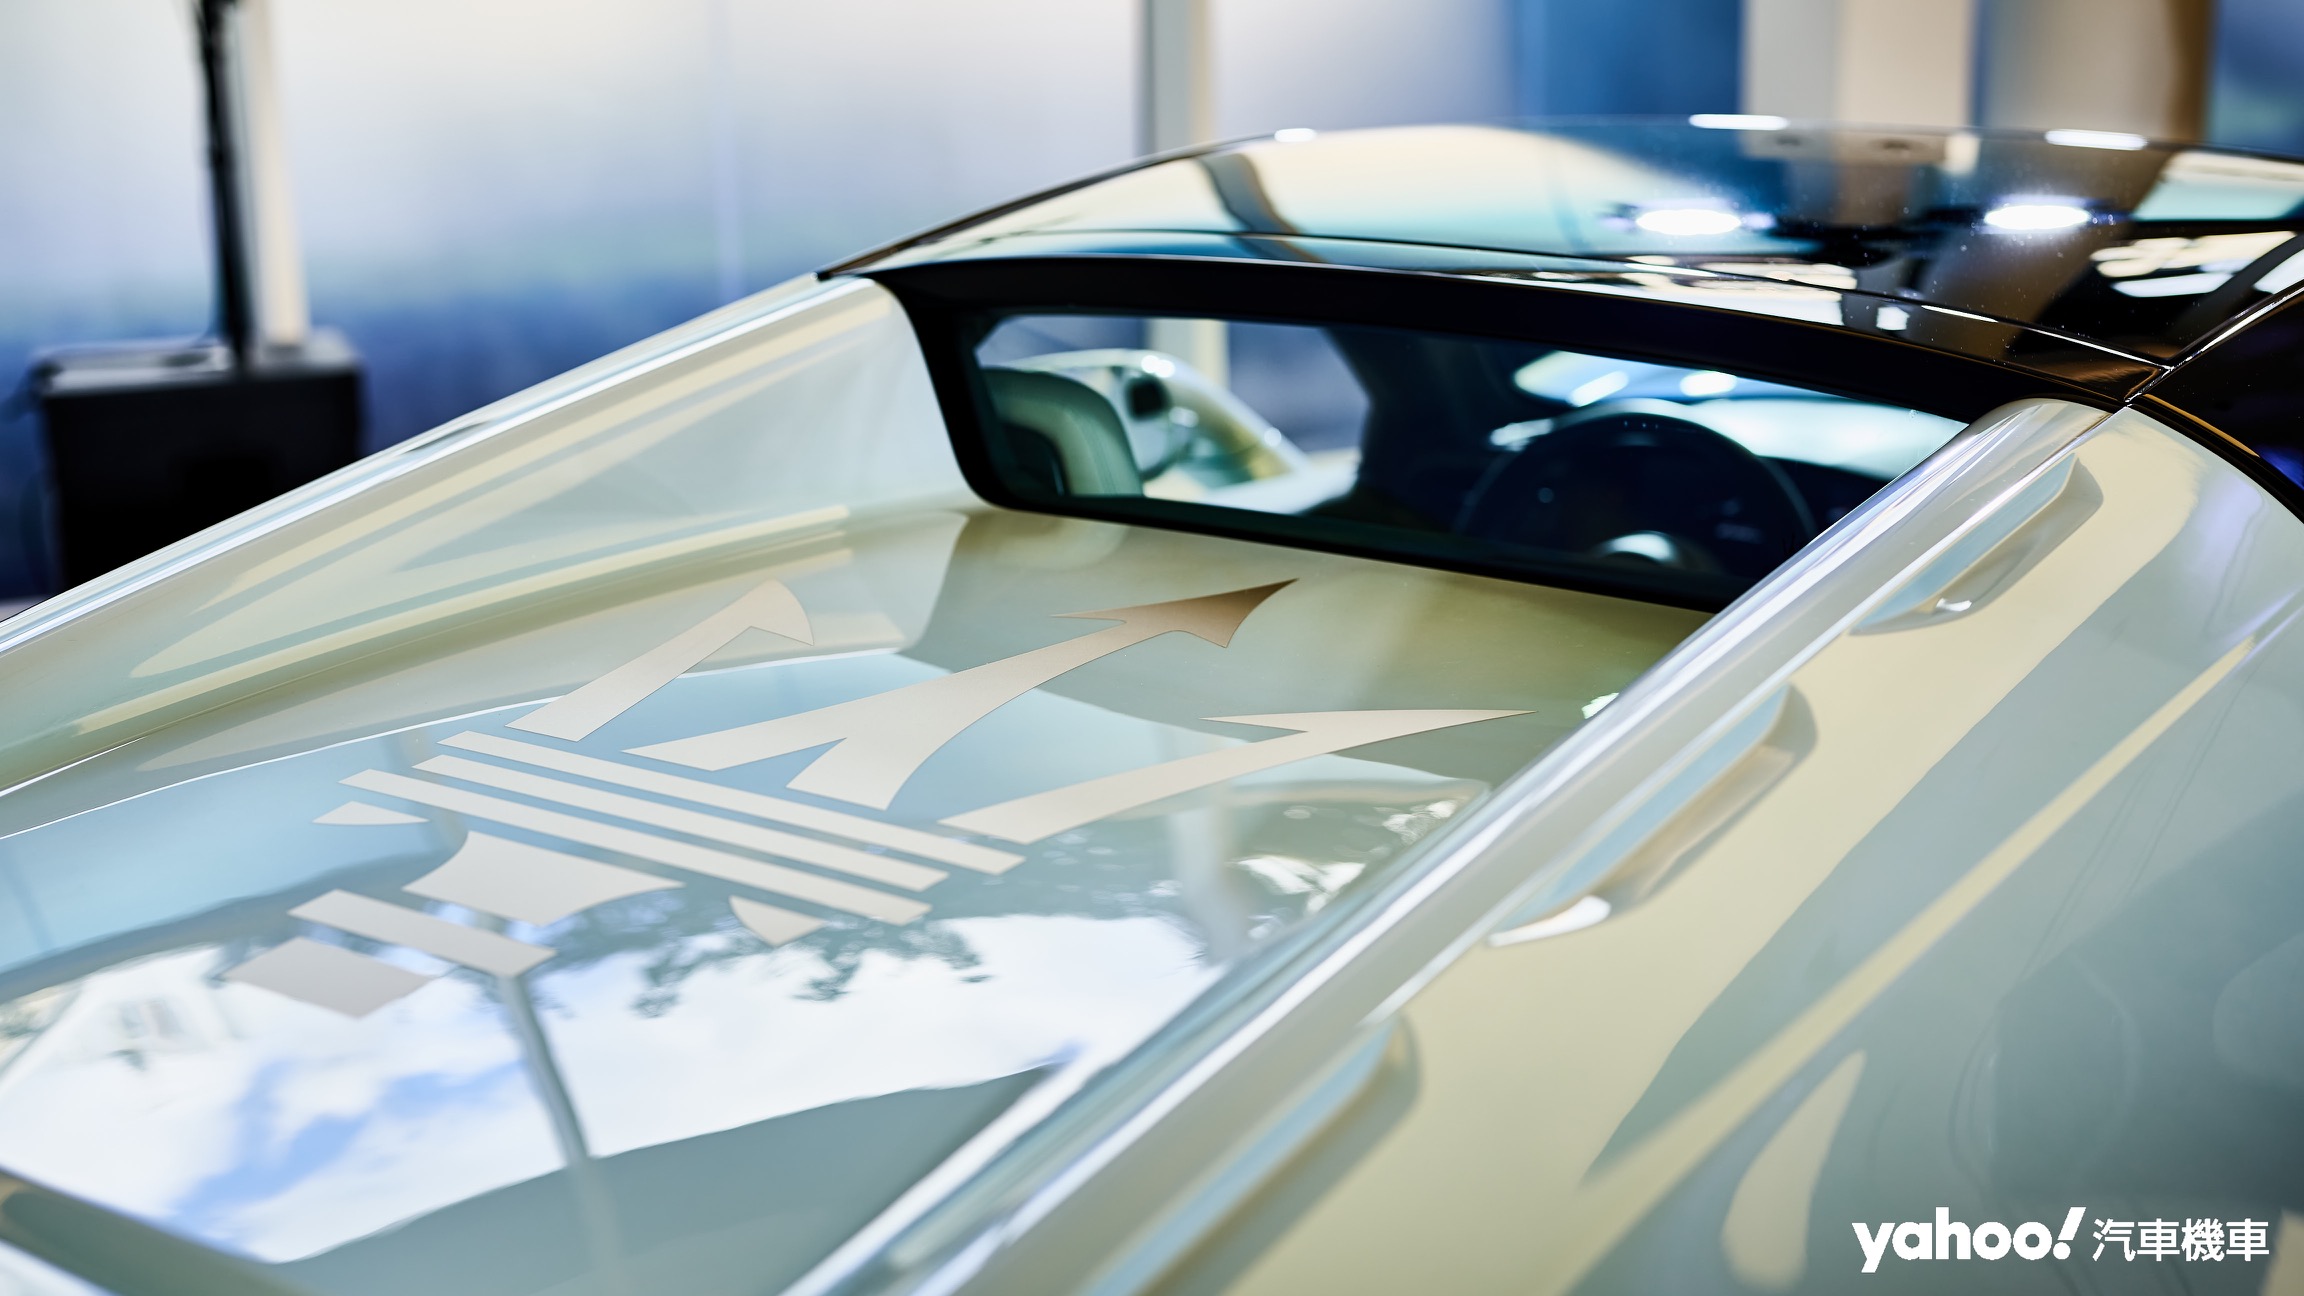 Coupé車型中原以鏤空方式呈現的中置引擎蓋如今改以高耐熱聚碳酸酯完整包覆，並以消光鈦色完整呈現海神三叉戟徽飾。